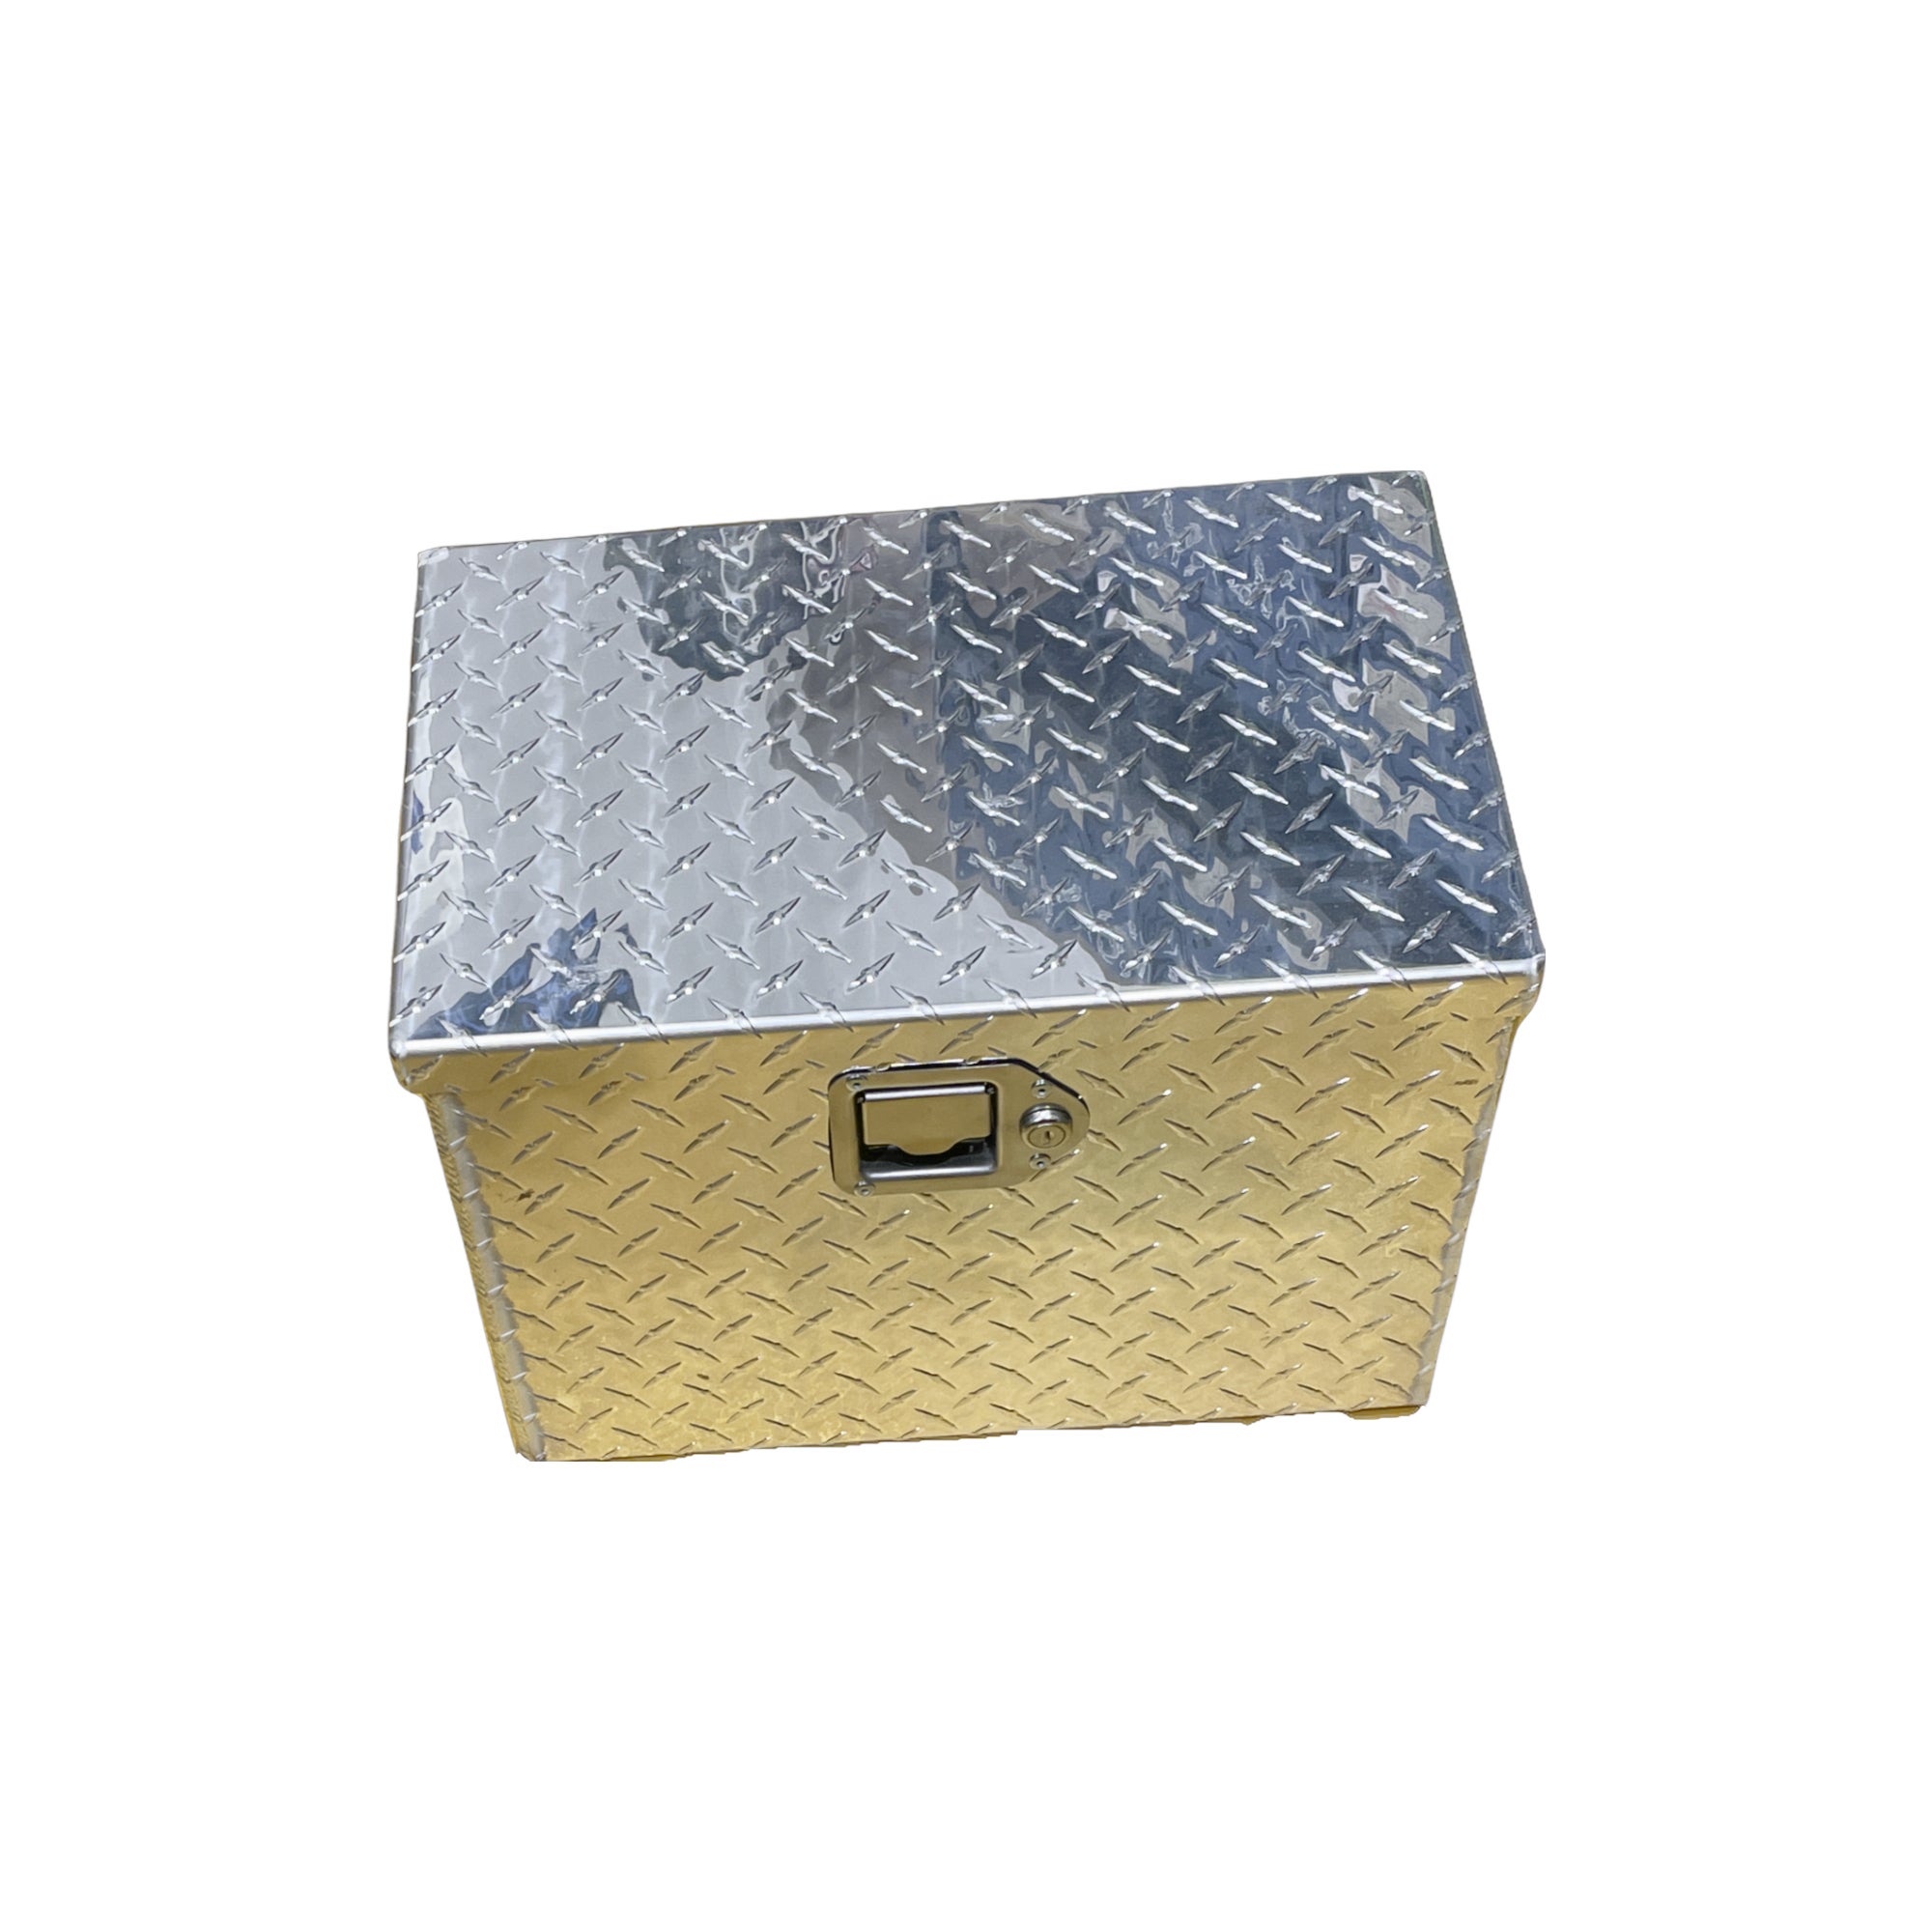 Small Aluminum Tool Box, 900-7900-78 Bandit